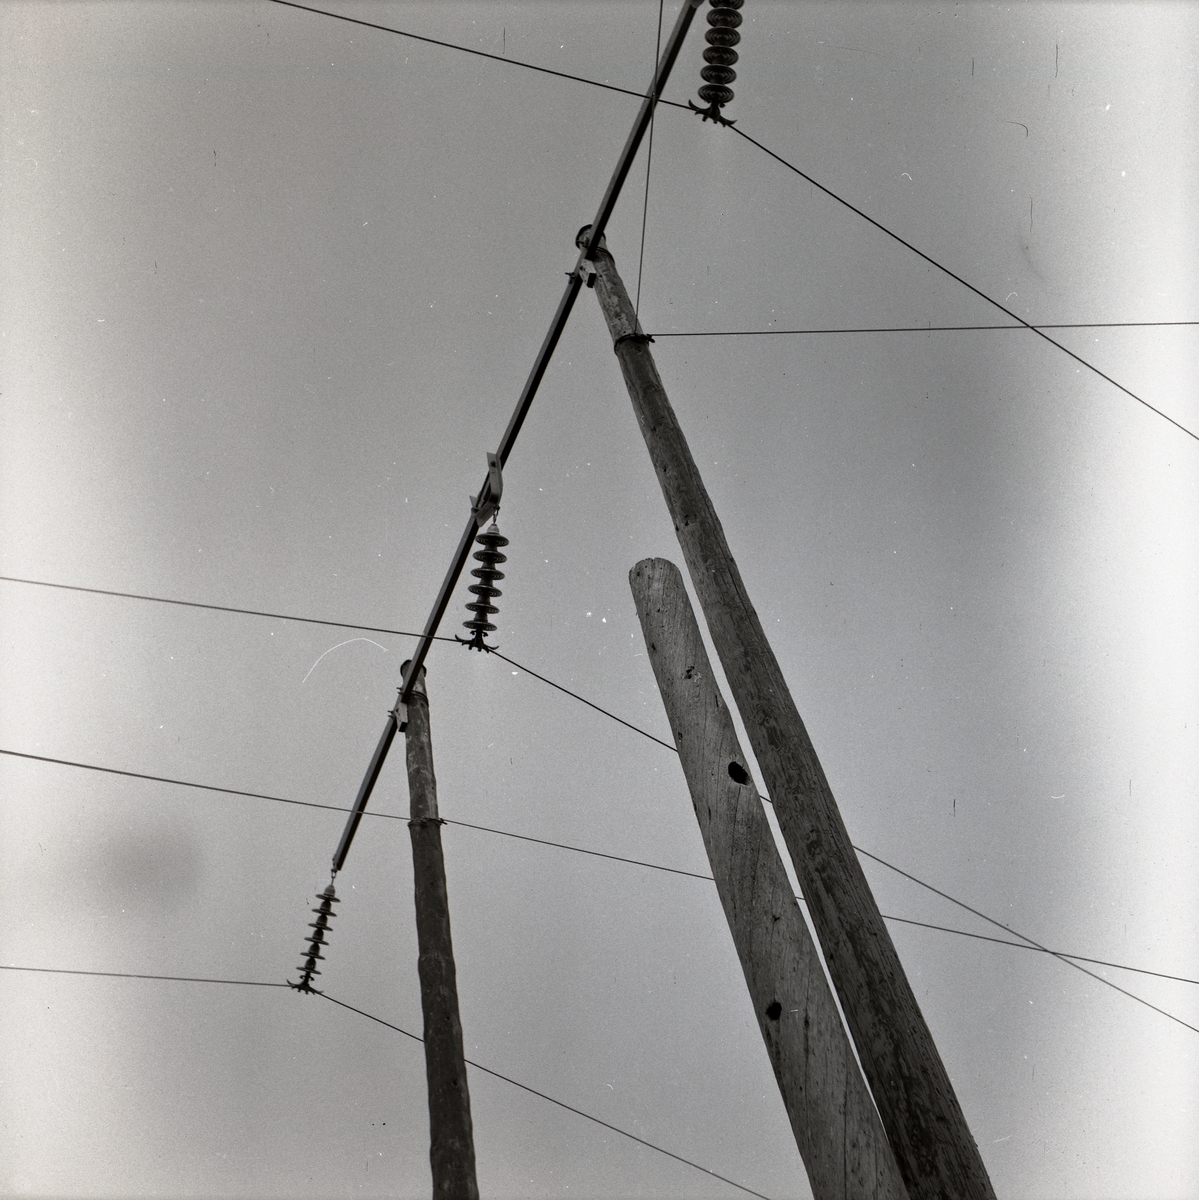 En ledningsstolpe i Via med hål efter hackspett (Spillkråka), maj 1953.